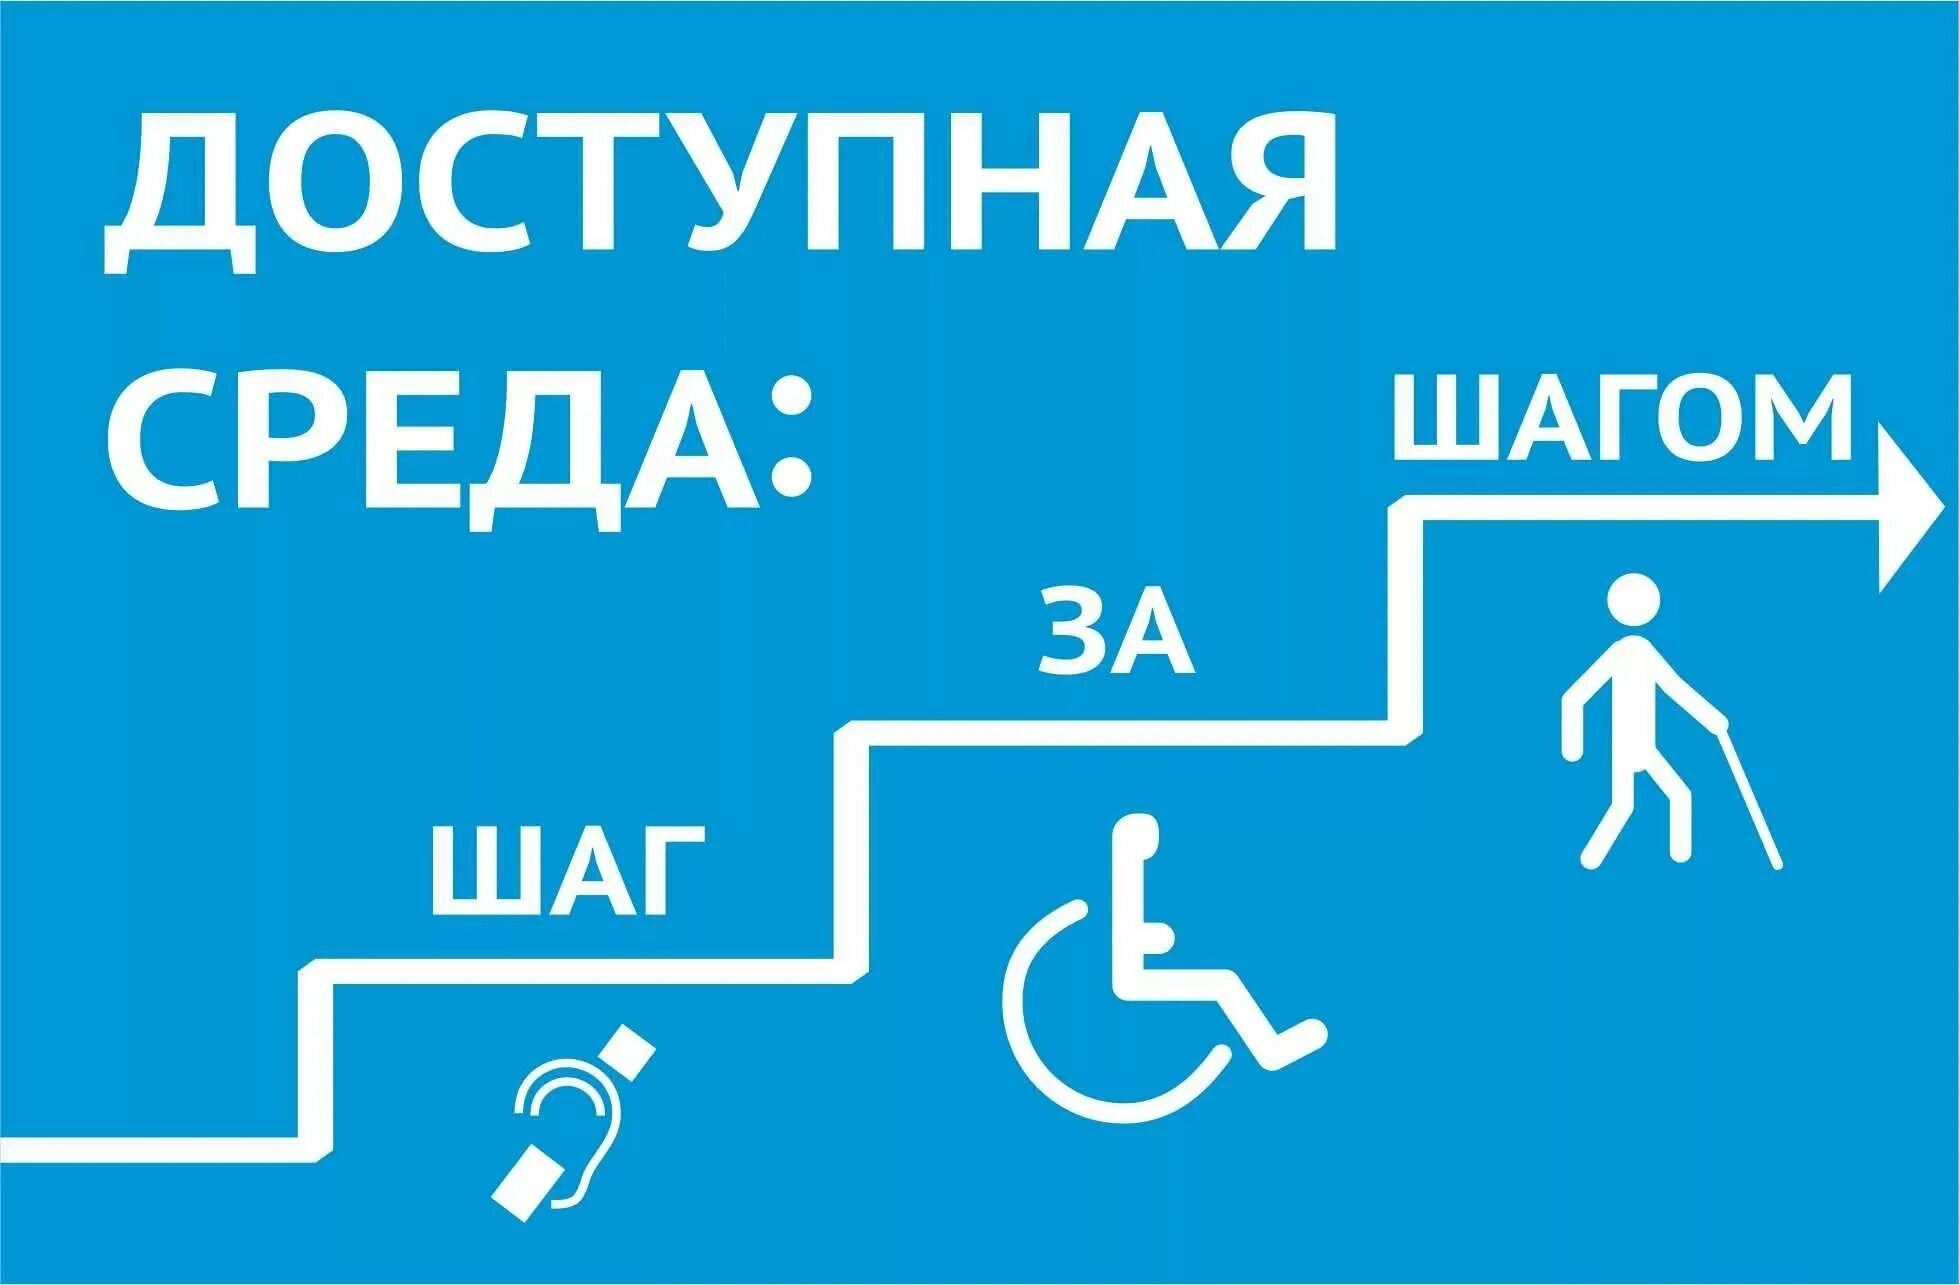 Доступный стоит. Доступная среда. Доступная среда для инвалидов. Программа доступная среда. Проект доступная среда для инвалидов.